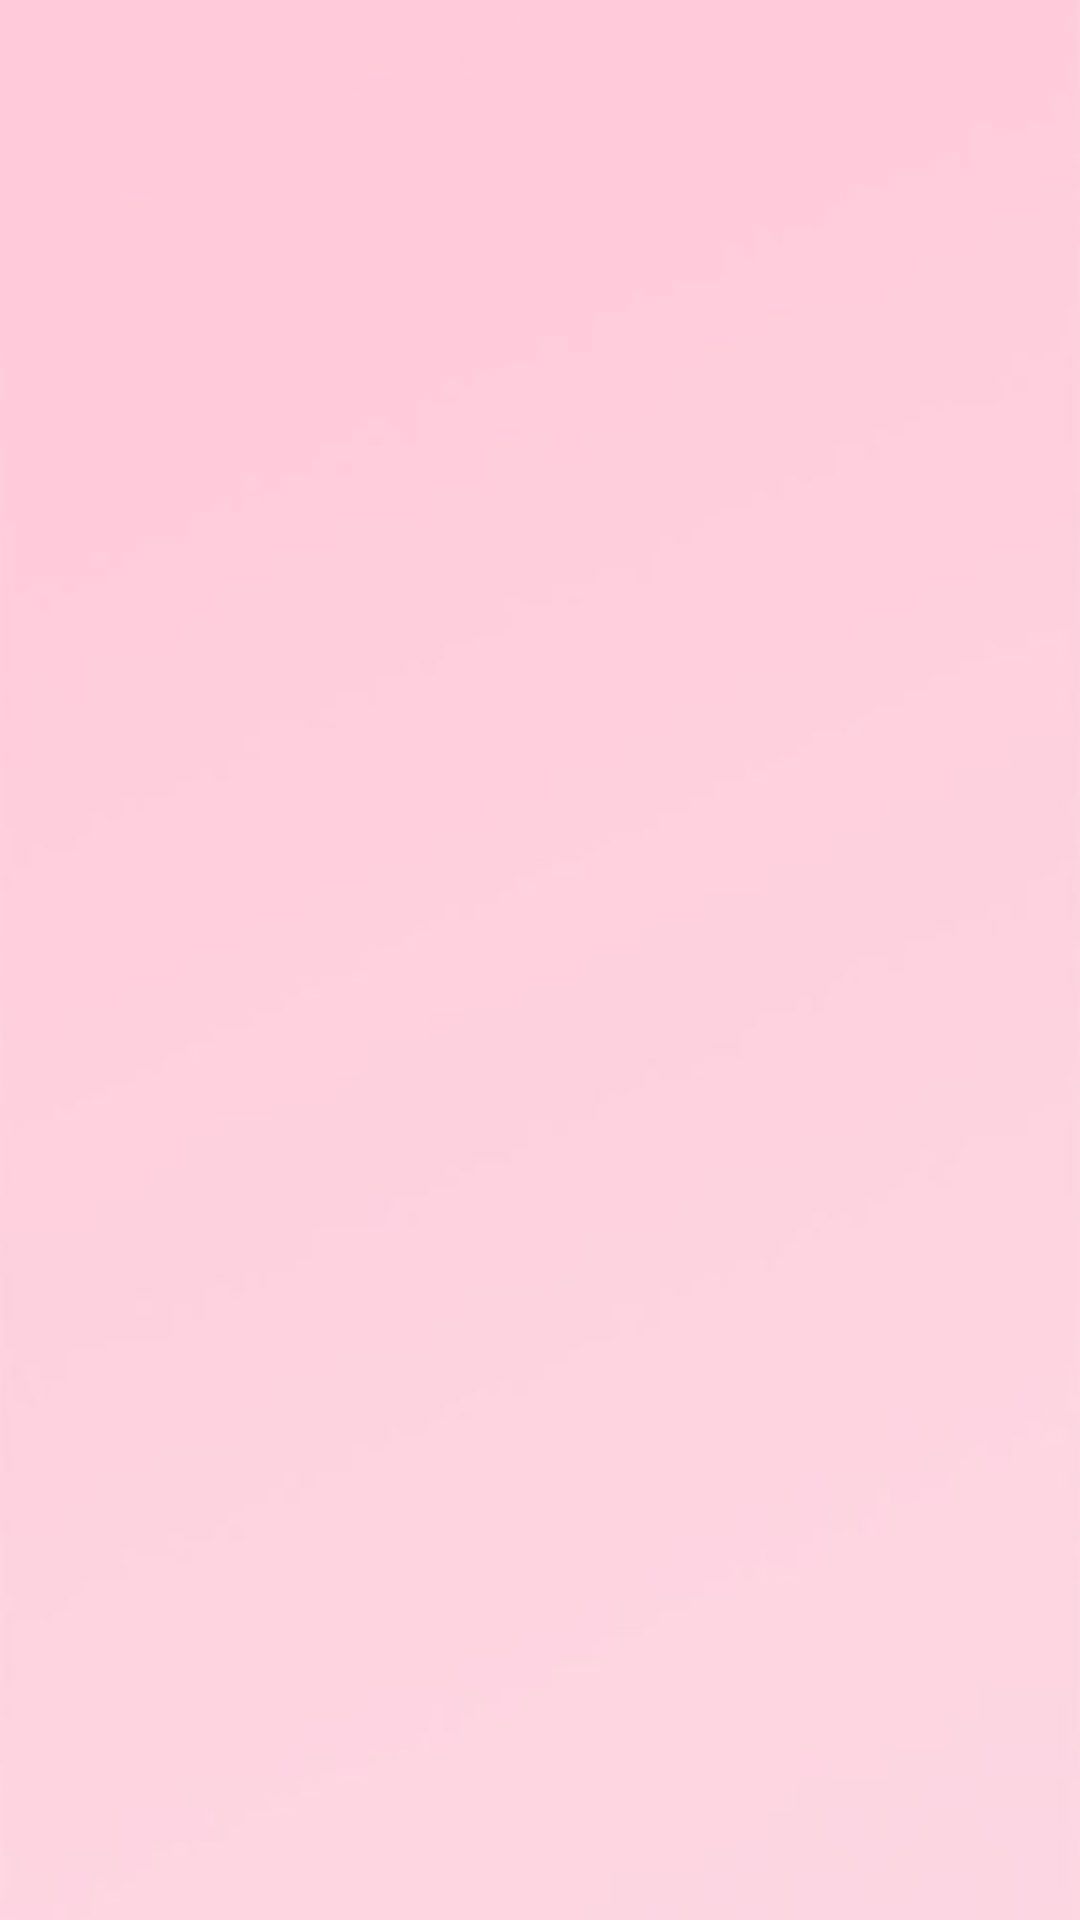 Hình nền màu hồng pastel trơn cực đẹp  Ảnh đẹp Free